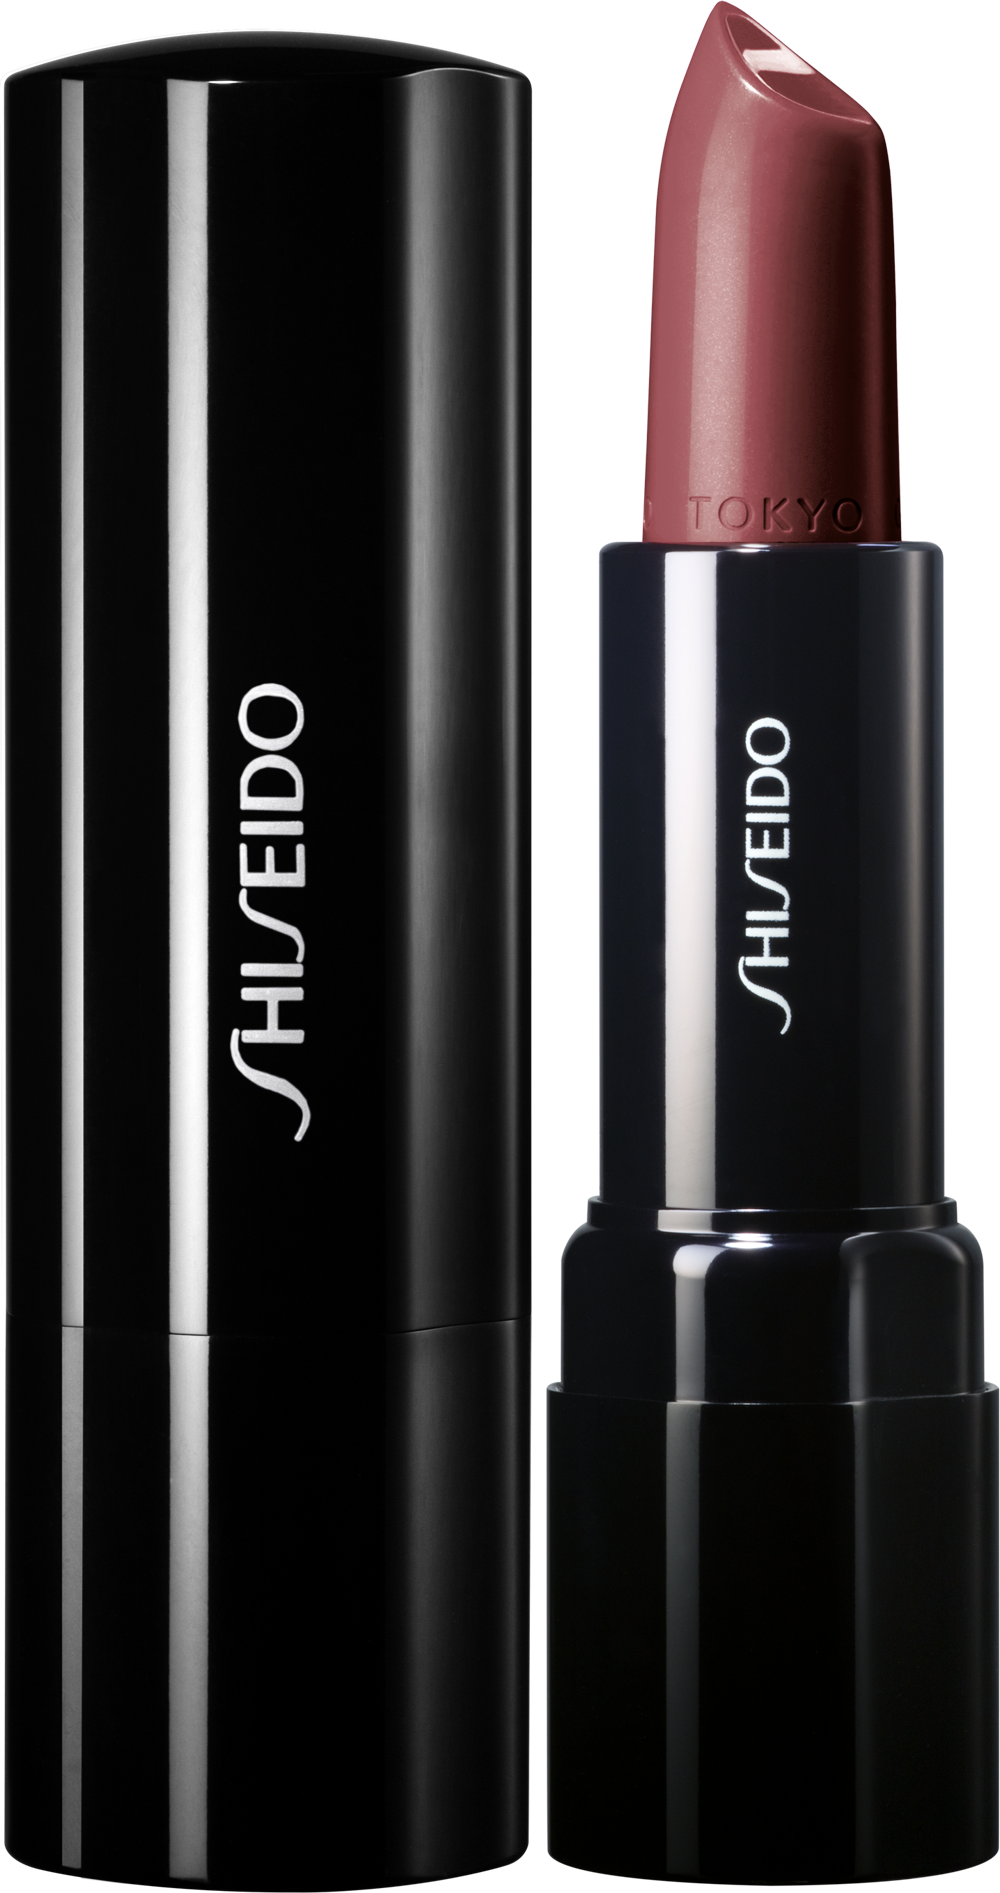 Помада императрицы. Помада Shiseido Rd 555. Shiseido помада для губ VISIONAIRY Gel Lipstick Limited Edition оттенок 222 "Ginza Red". Shiseido perfect rouge 711. Shiseido матовая помада для губ Modernmatte, 524 Dark Fantasy.